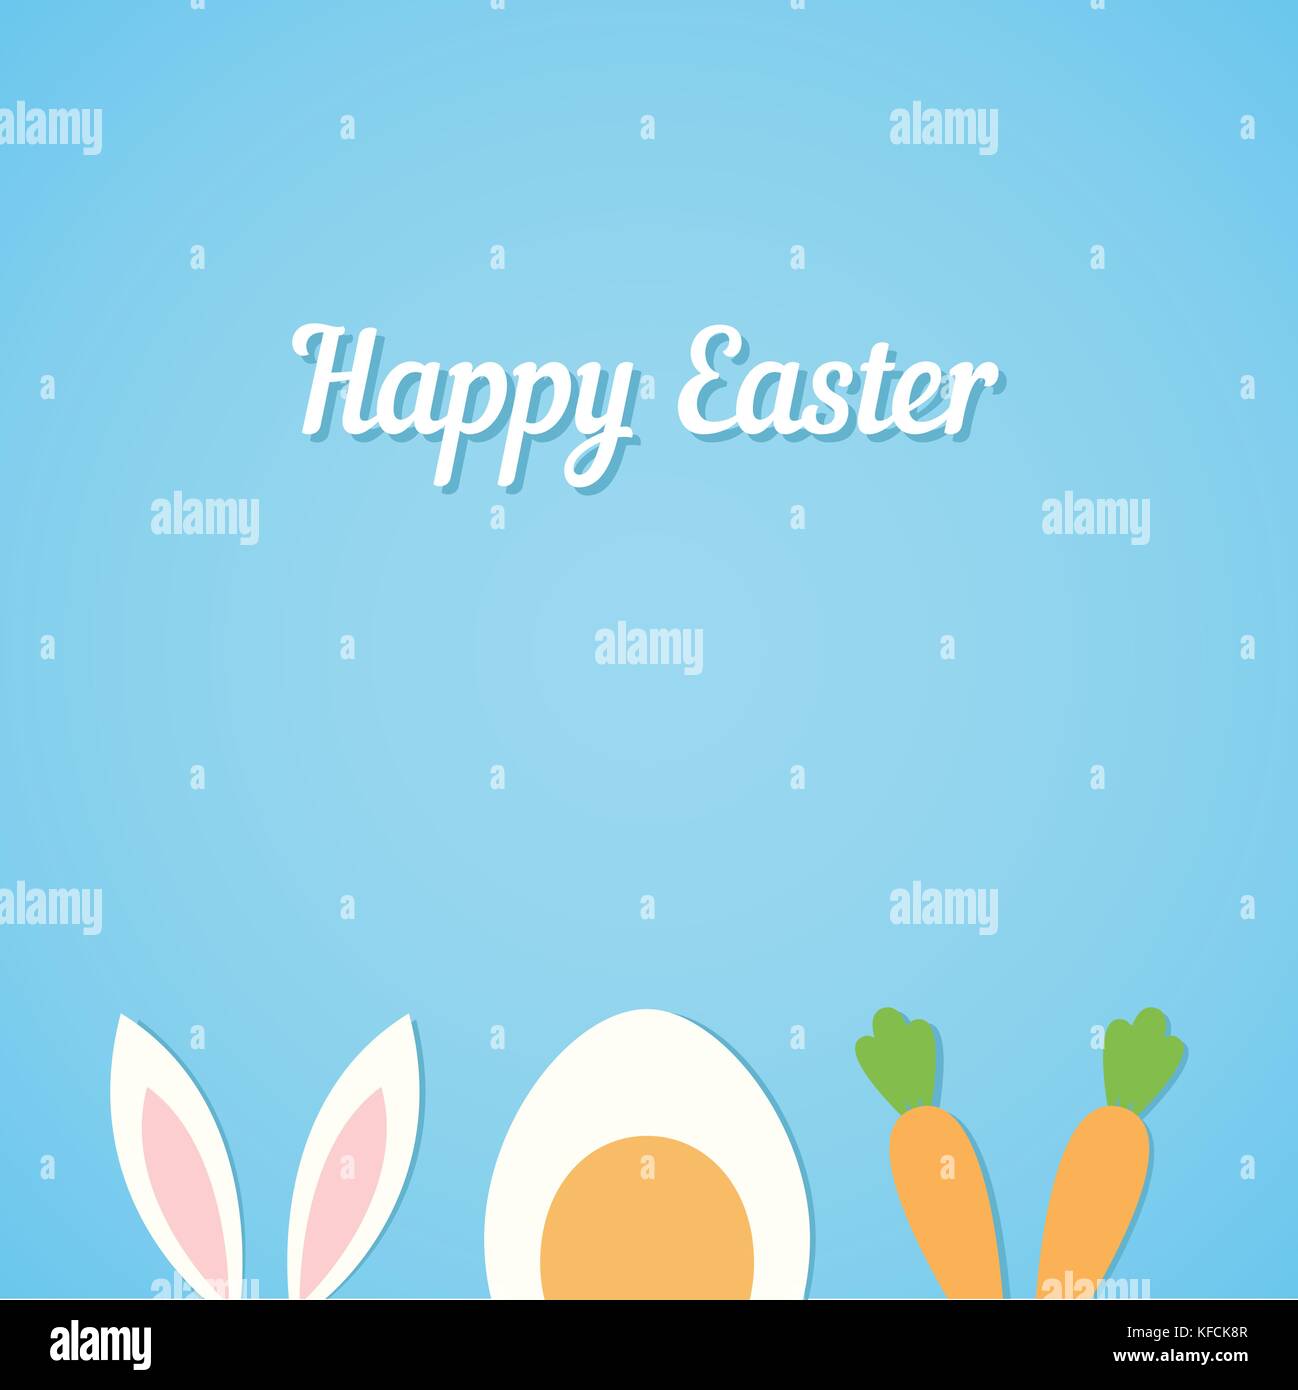 Tarjeta de Pascua feliz de vectores de fondo plano con un mínimo de orejas de conejo, huevo duro y zanahoria fresca - símbolos de la PASCUA Ilustración del Vector